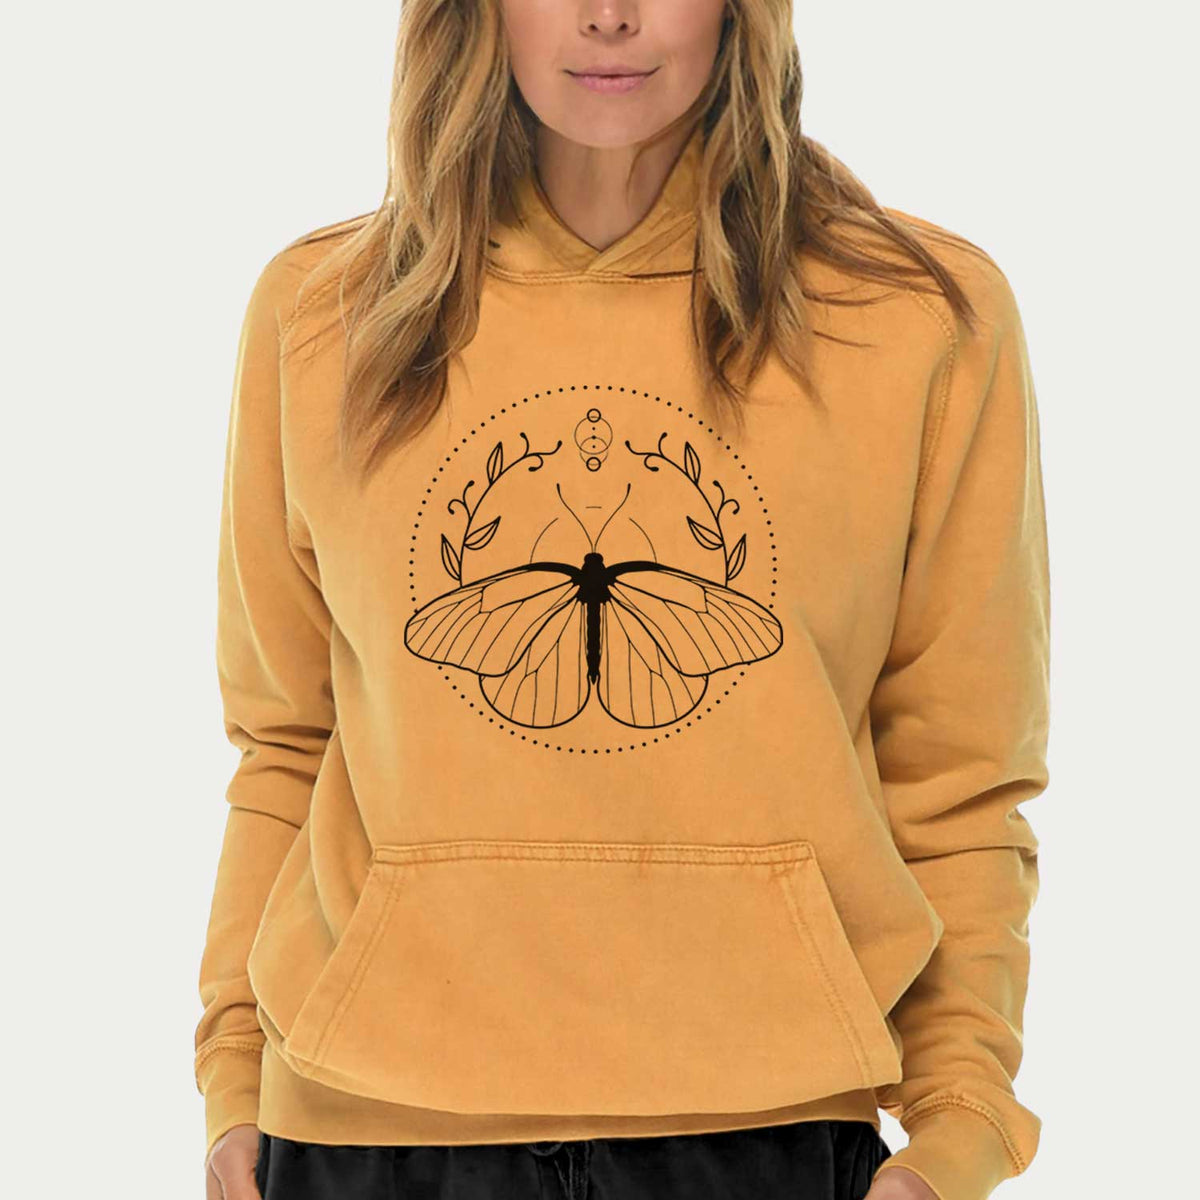 Aporia crataegi - Black Veined White Butterfly  - Mid-Weight Unisex Vintage 100% Cotton Hoodie